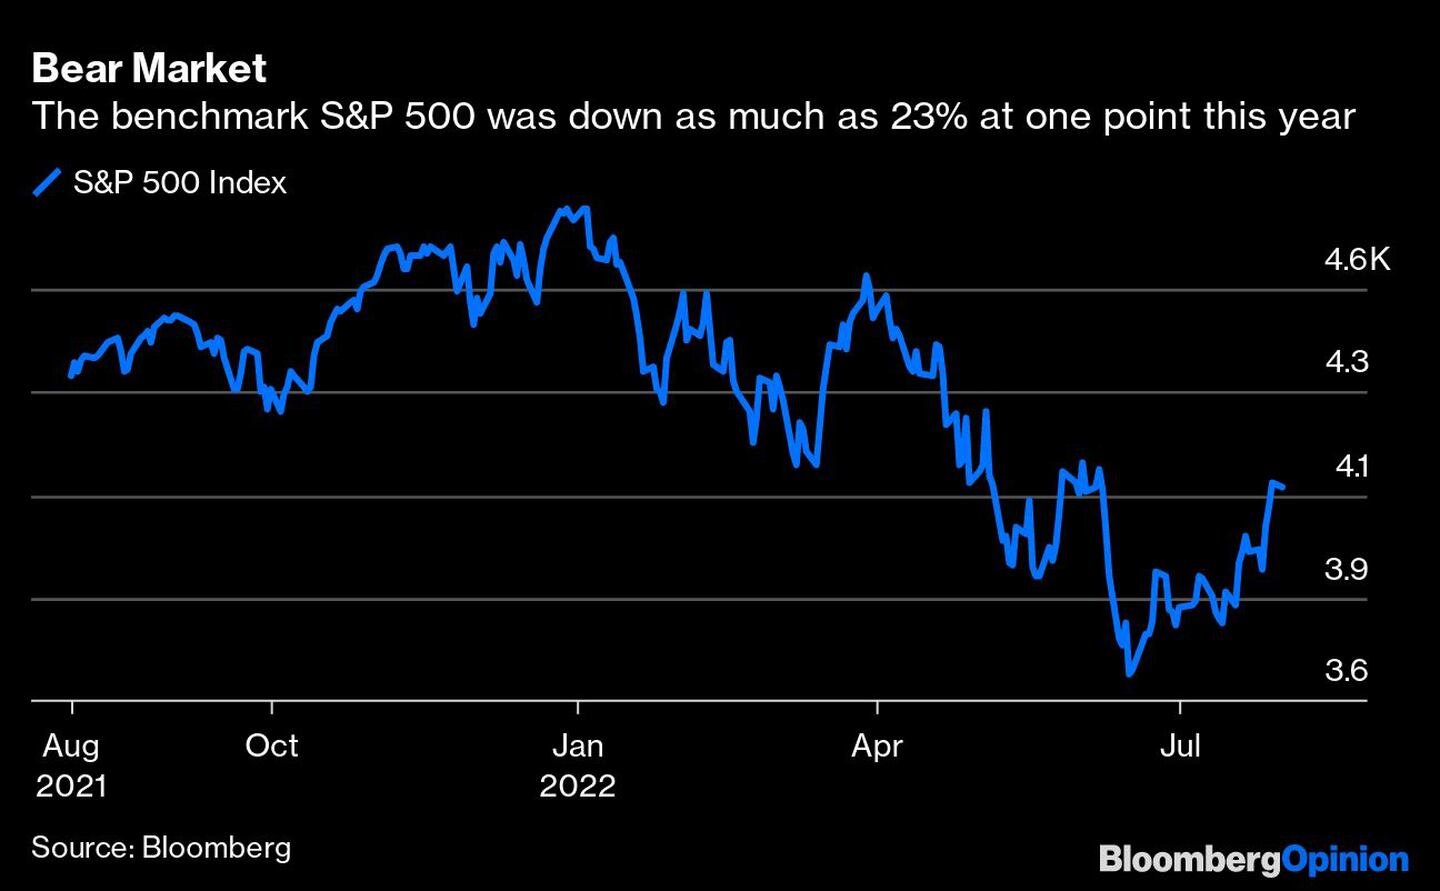 El S&P 500 llegó a caer 23% en un punto este añodfd